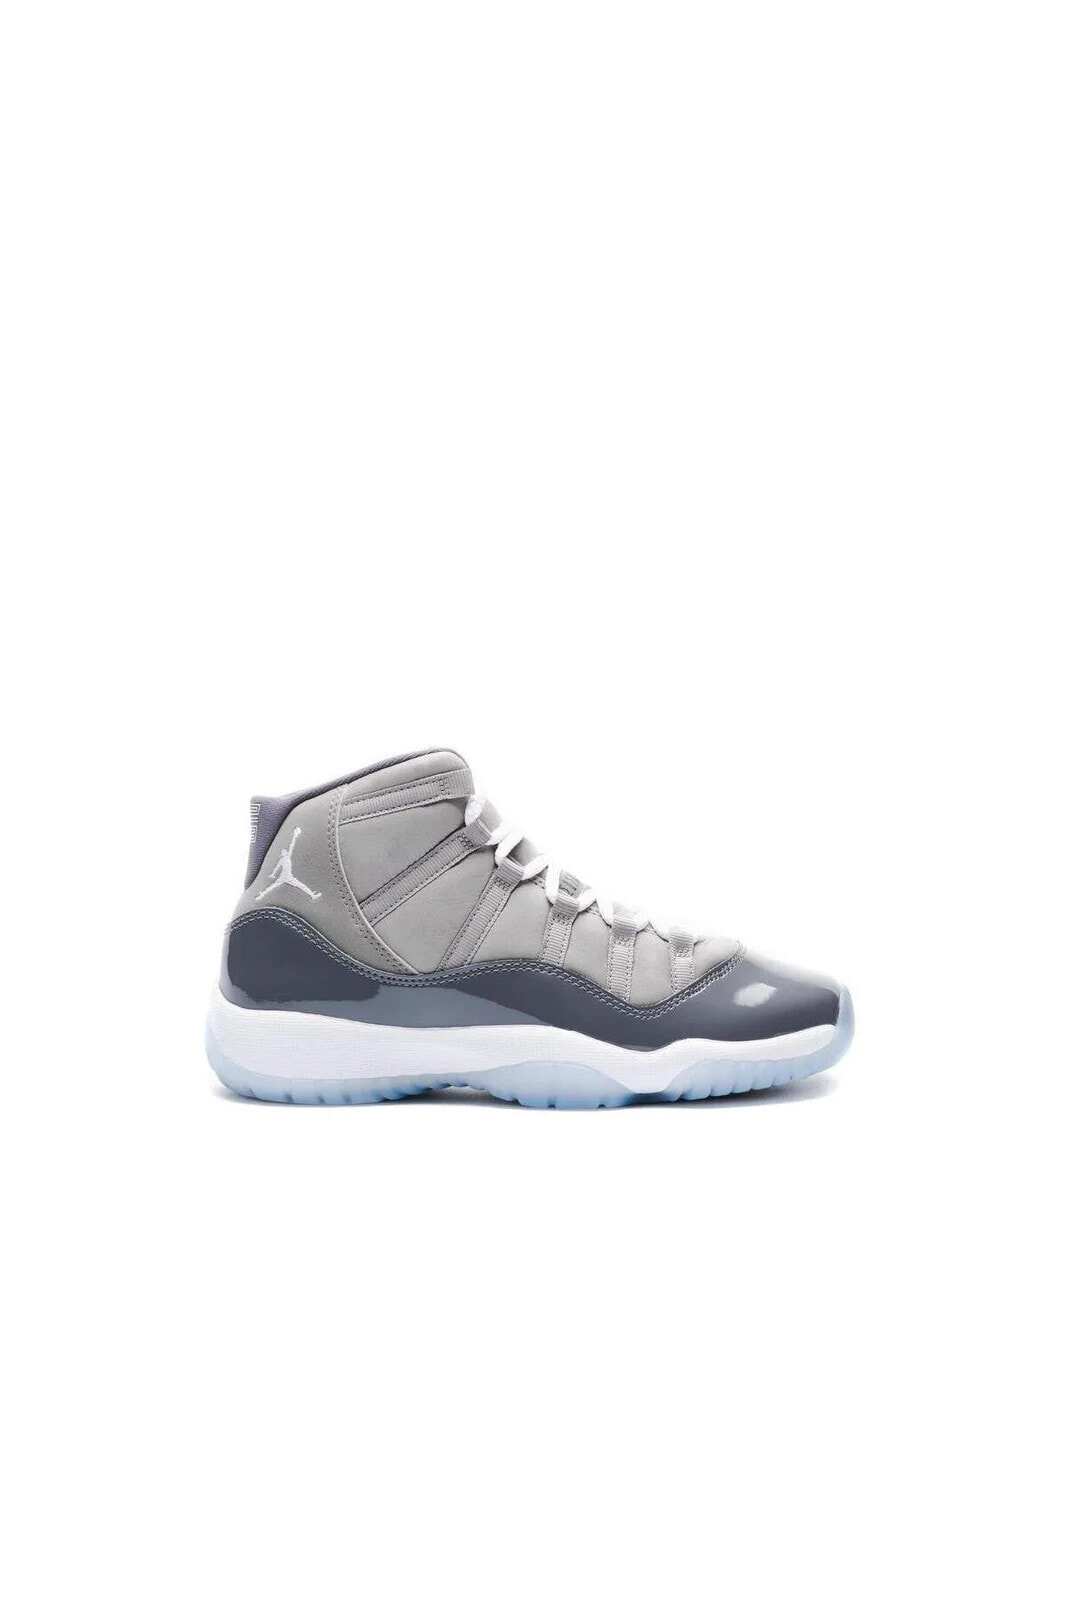 Jordan 11 Retro Cool Grey 378038-005 Unisex Basketbol Ayakkabısı